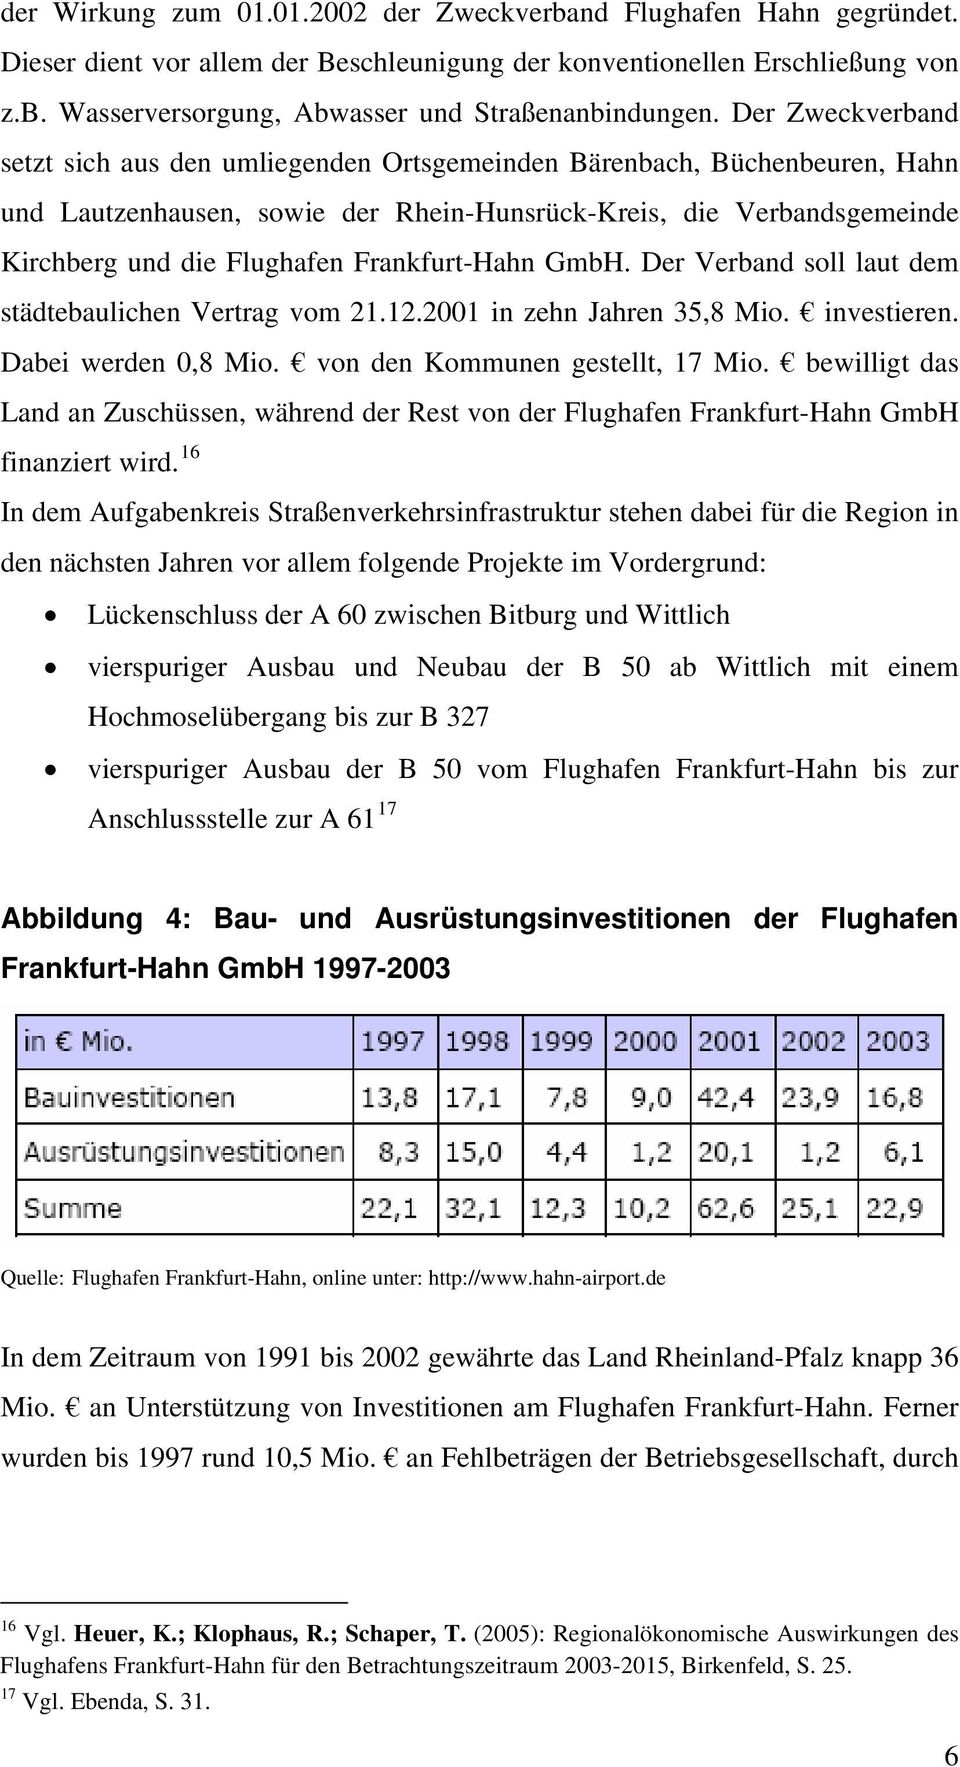 Frankfurt-Hahn GmbH. Der Verband soll laut dem städtebaulichen Vertrag vom 21.12.2001 in zehn Jahren 35,8 Mio. investieren. Dabei werden 0,8 Mio. von den Kommunen gestellt, 17 Mio.